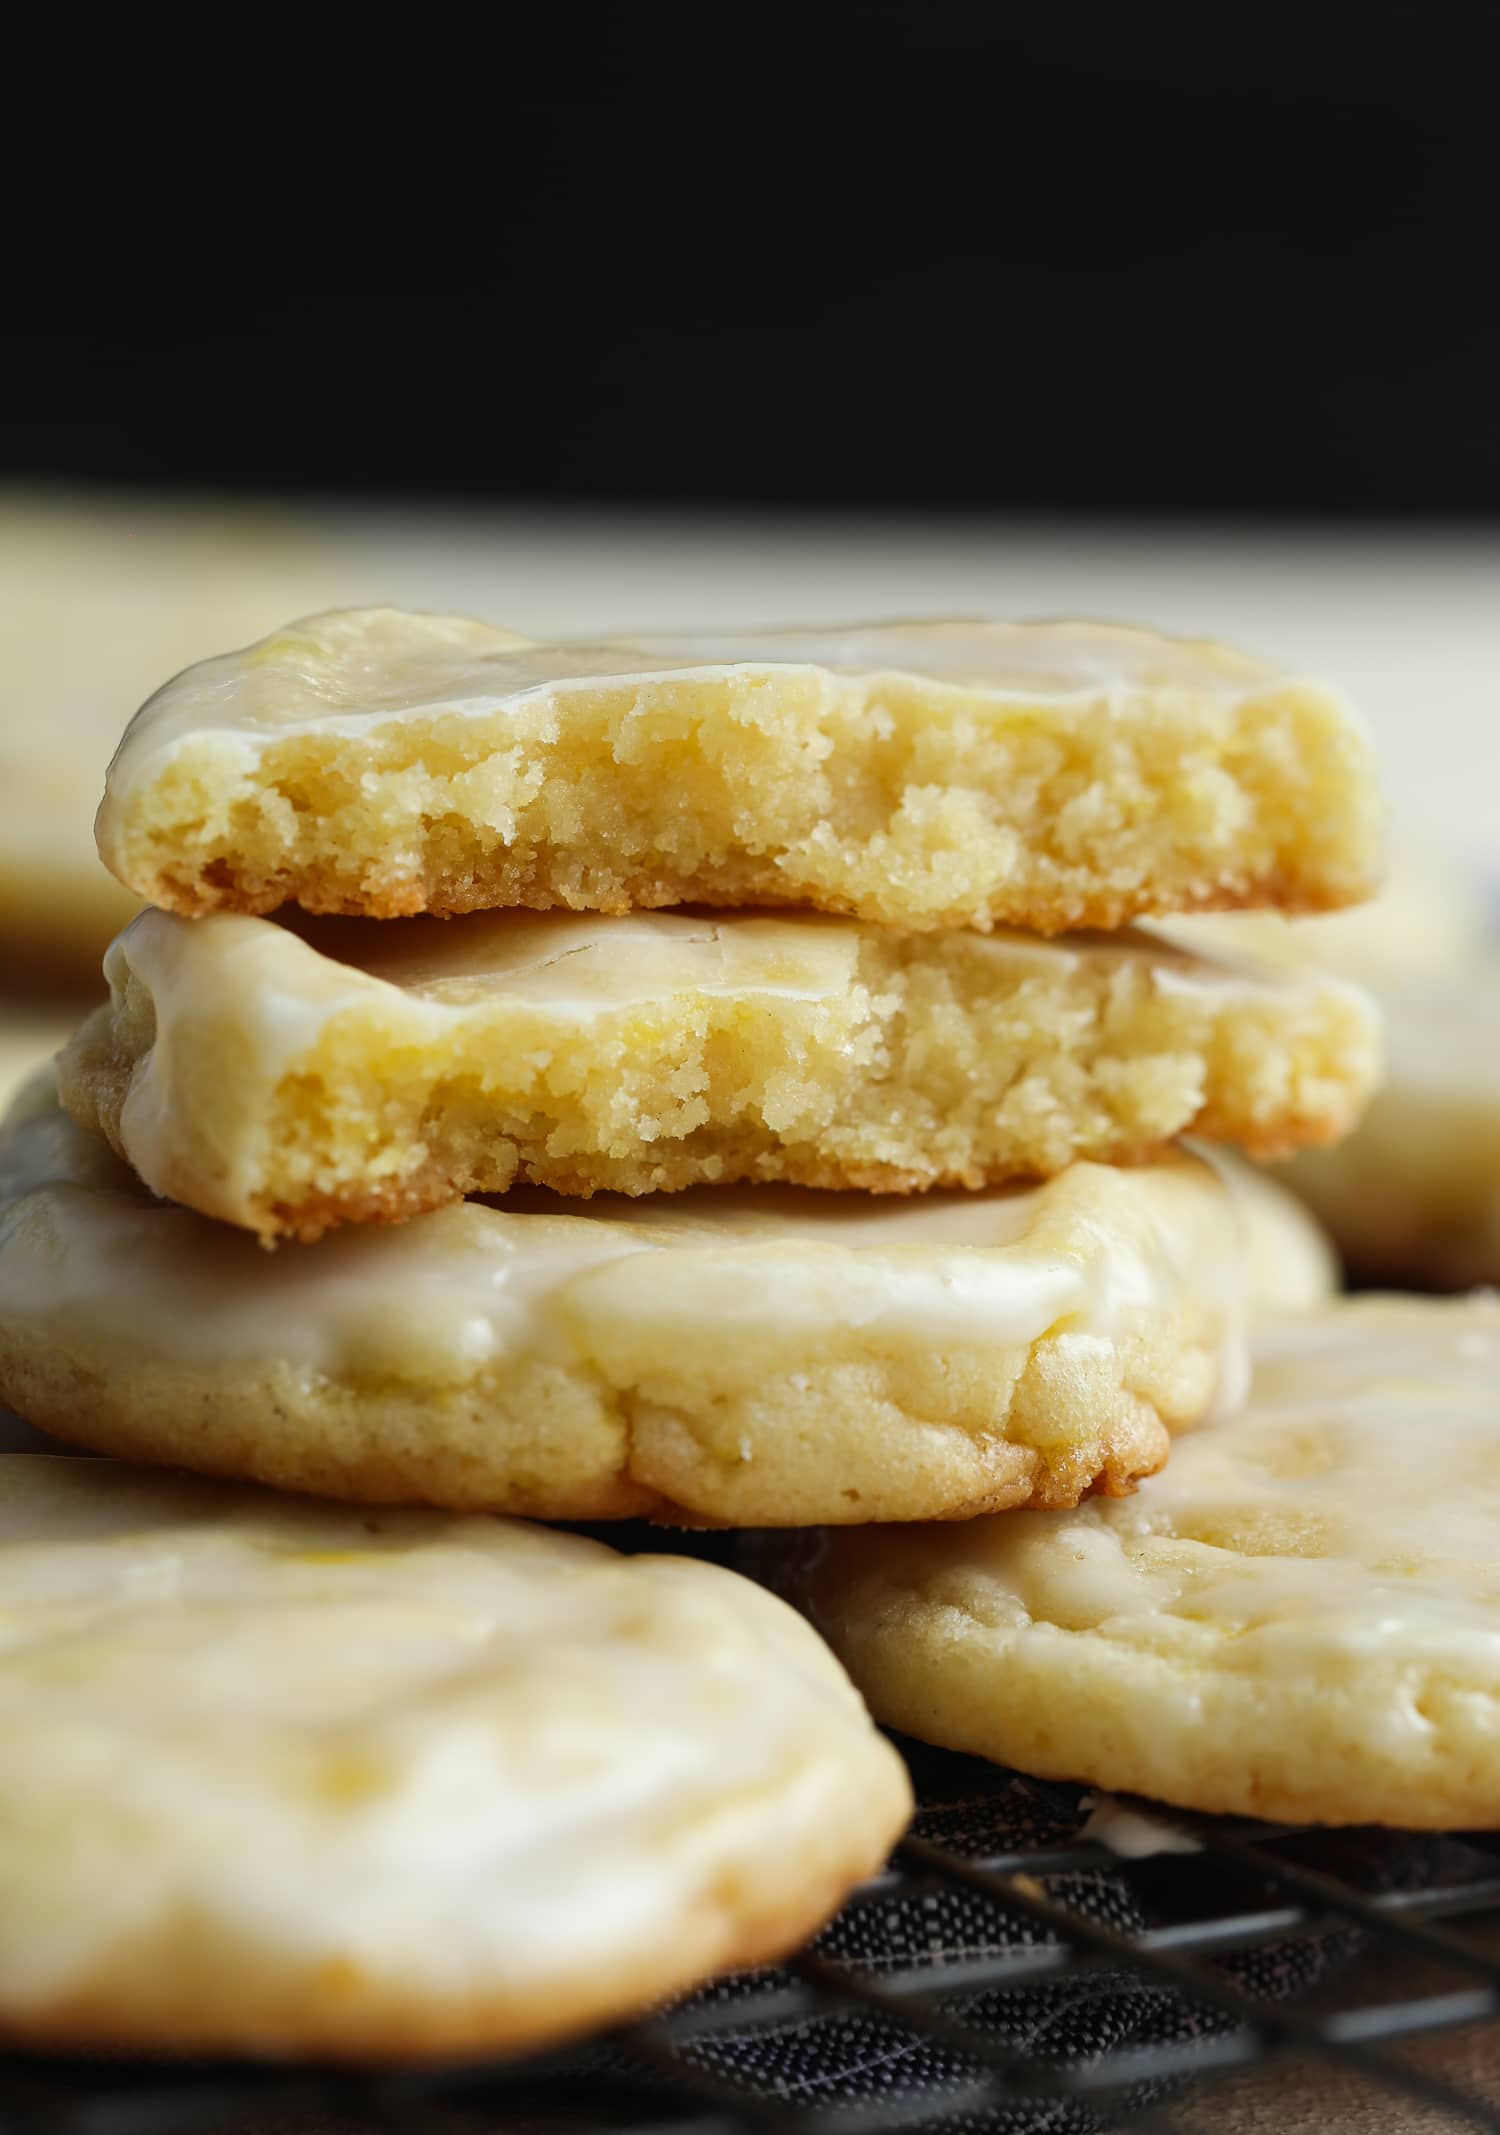 Lemonhead Cookies | Easy Lemon Cookies Recipe | Best Lemon Desserts